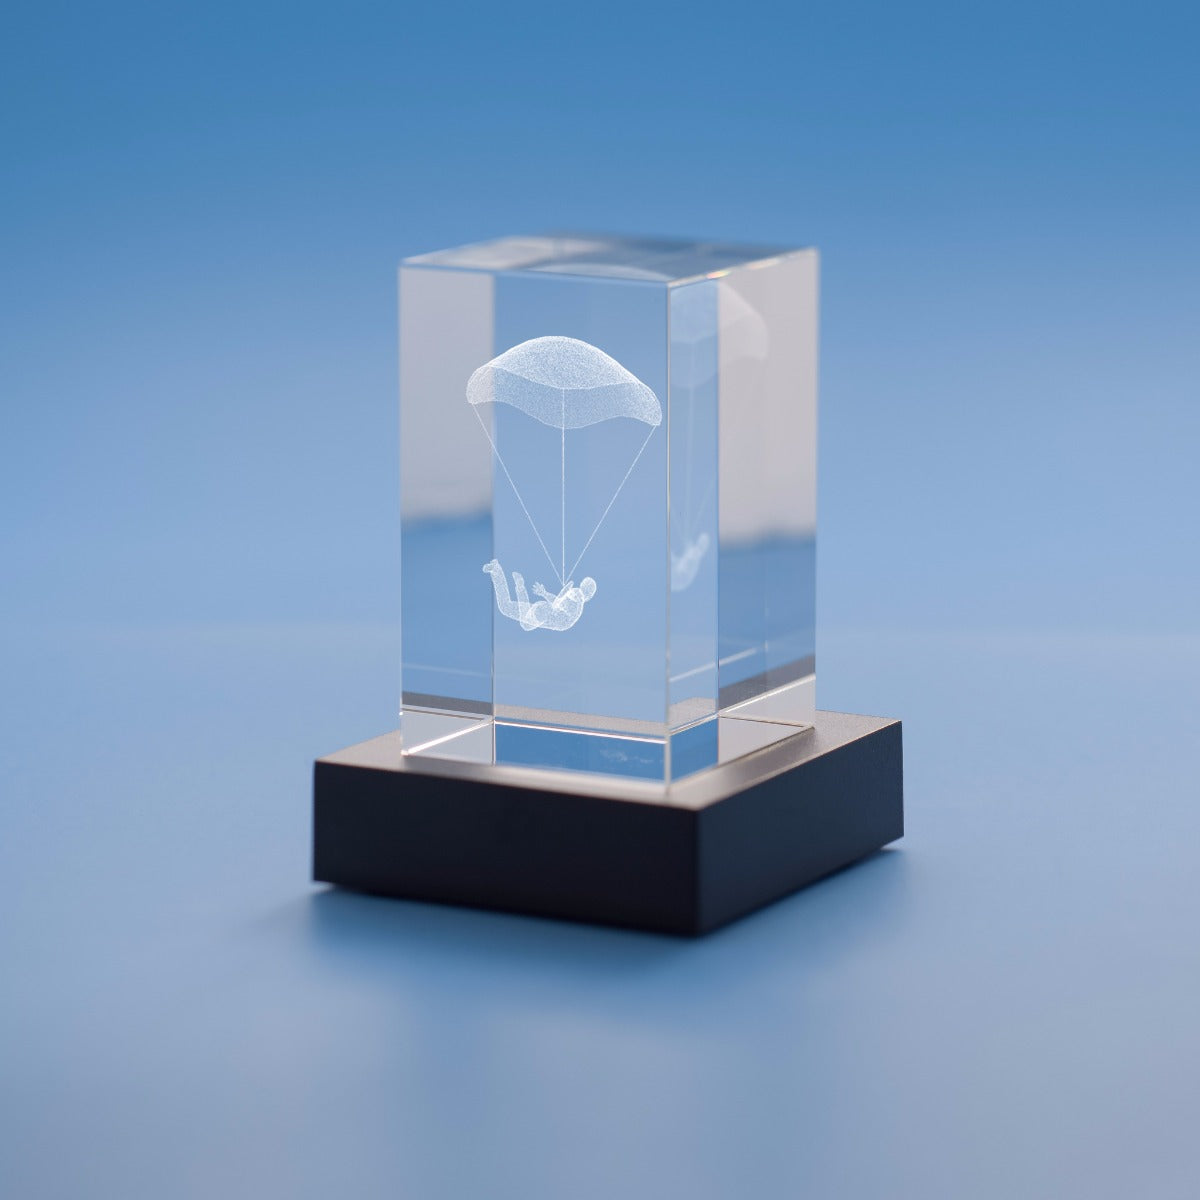 Sky Diving Hobbies Tower Crystal, 3D Engraved